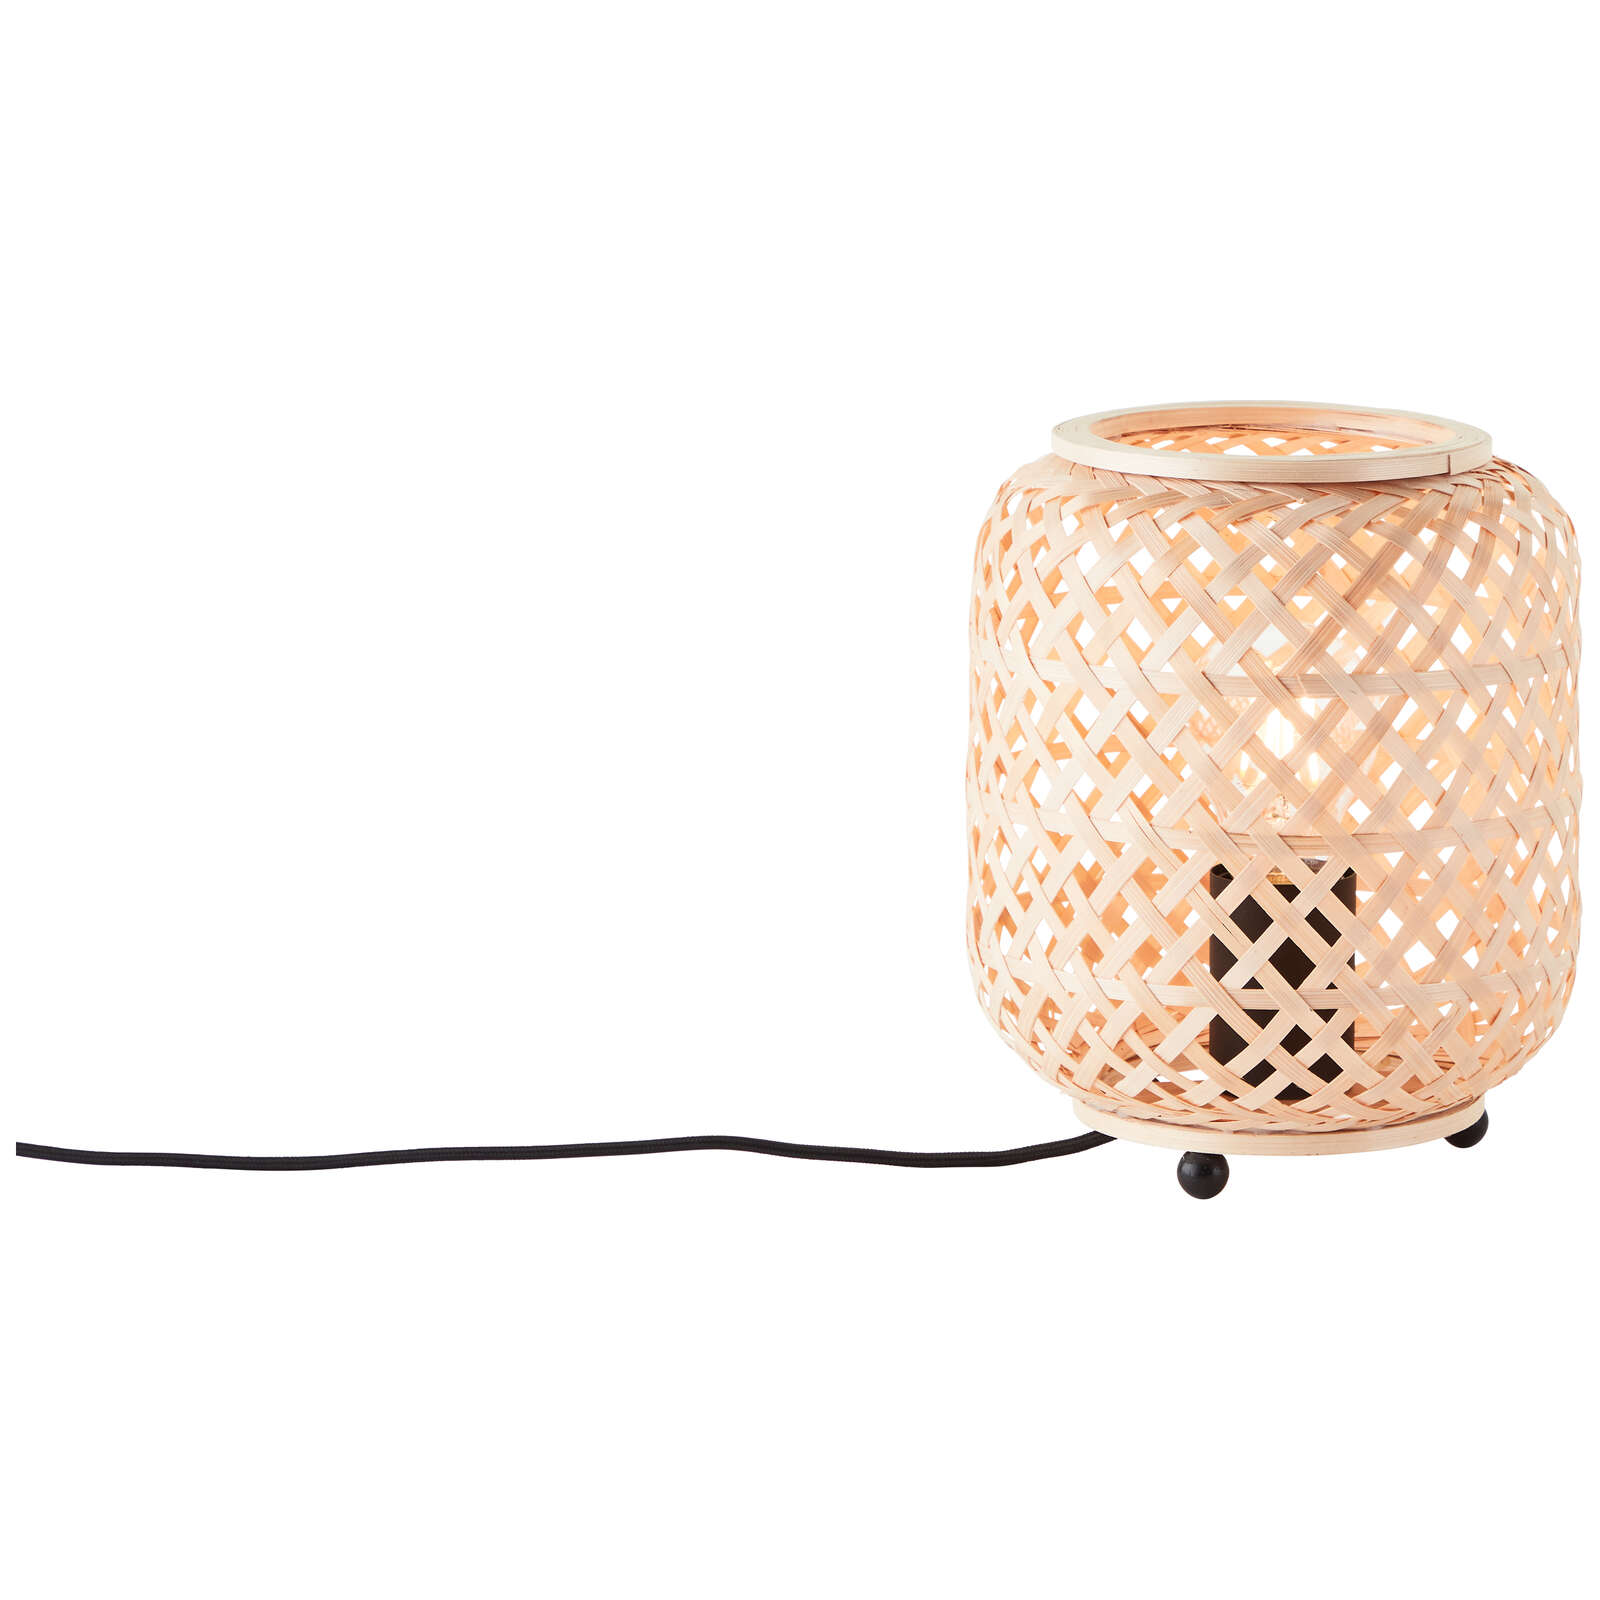             Lámpara de mesa de bambú - Lina - Marrón
        